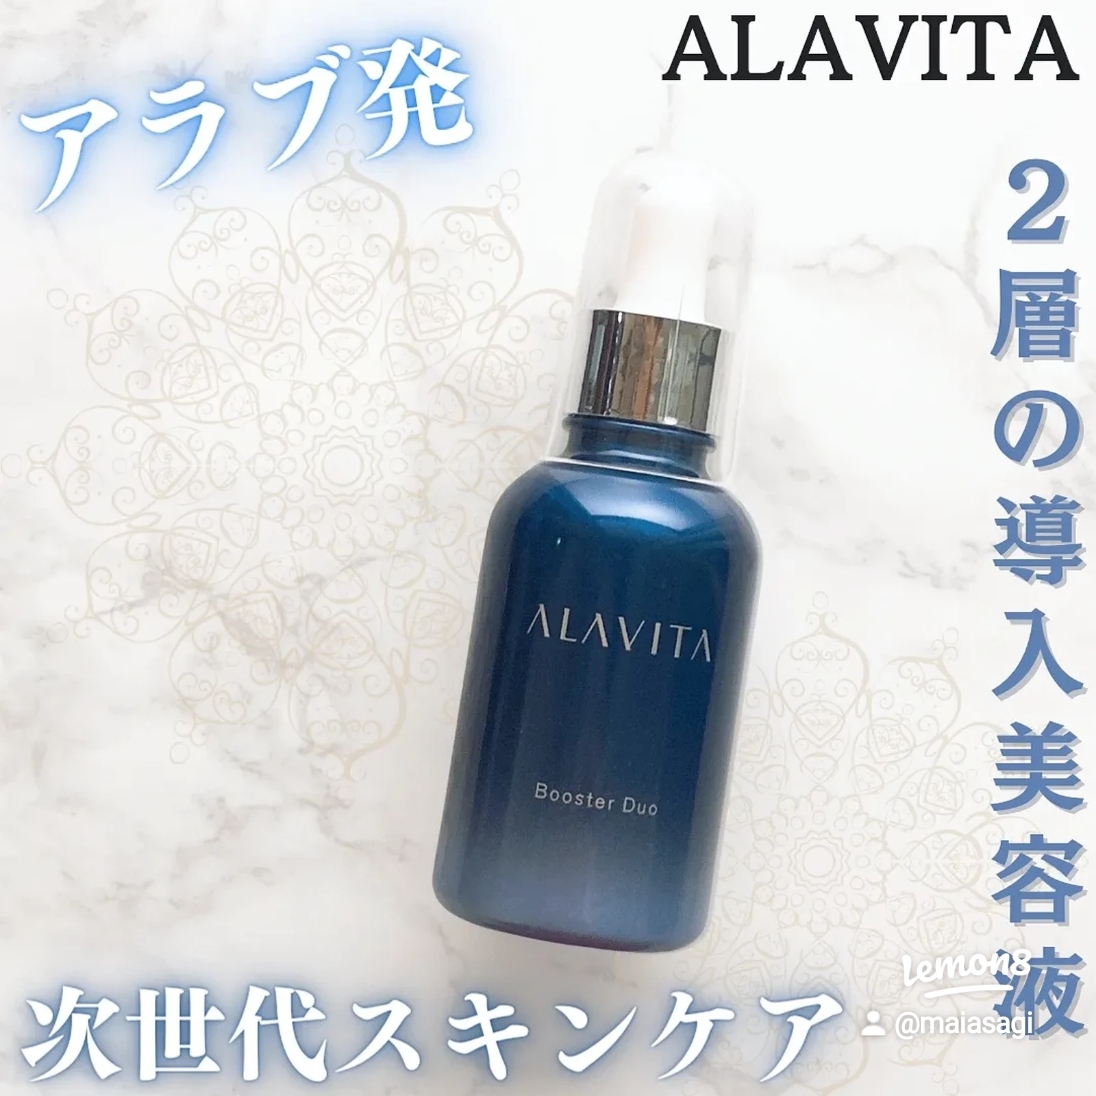 ALAVITA(アラヴィータ) ブースター デュオの良い点・メリットに関するmaiasagiさんの口コミ画像1